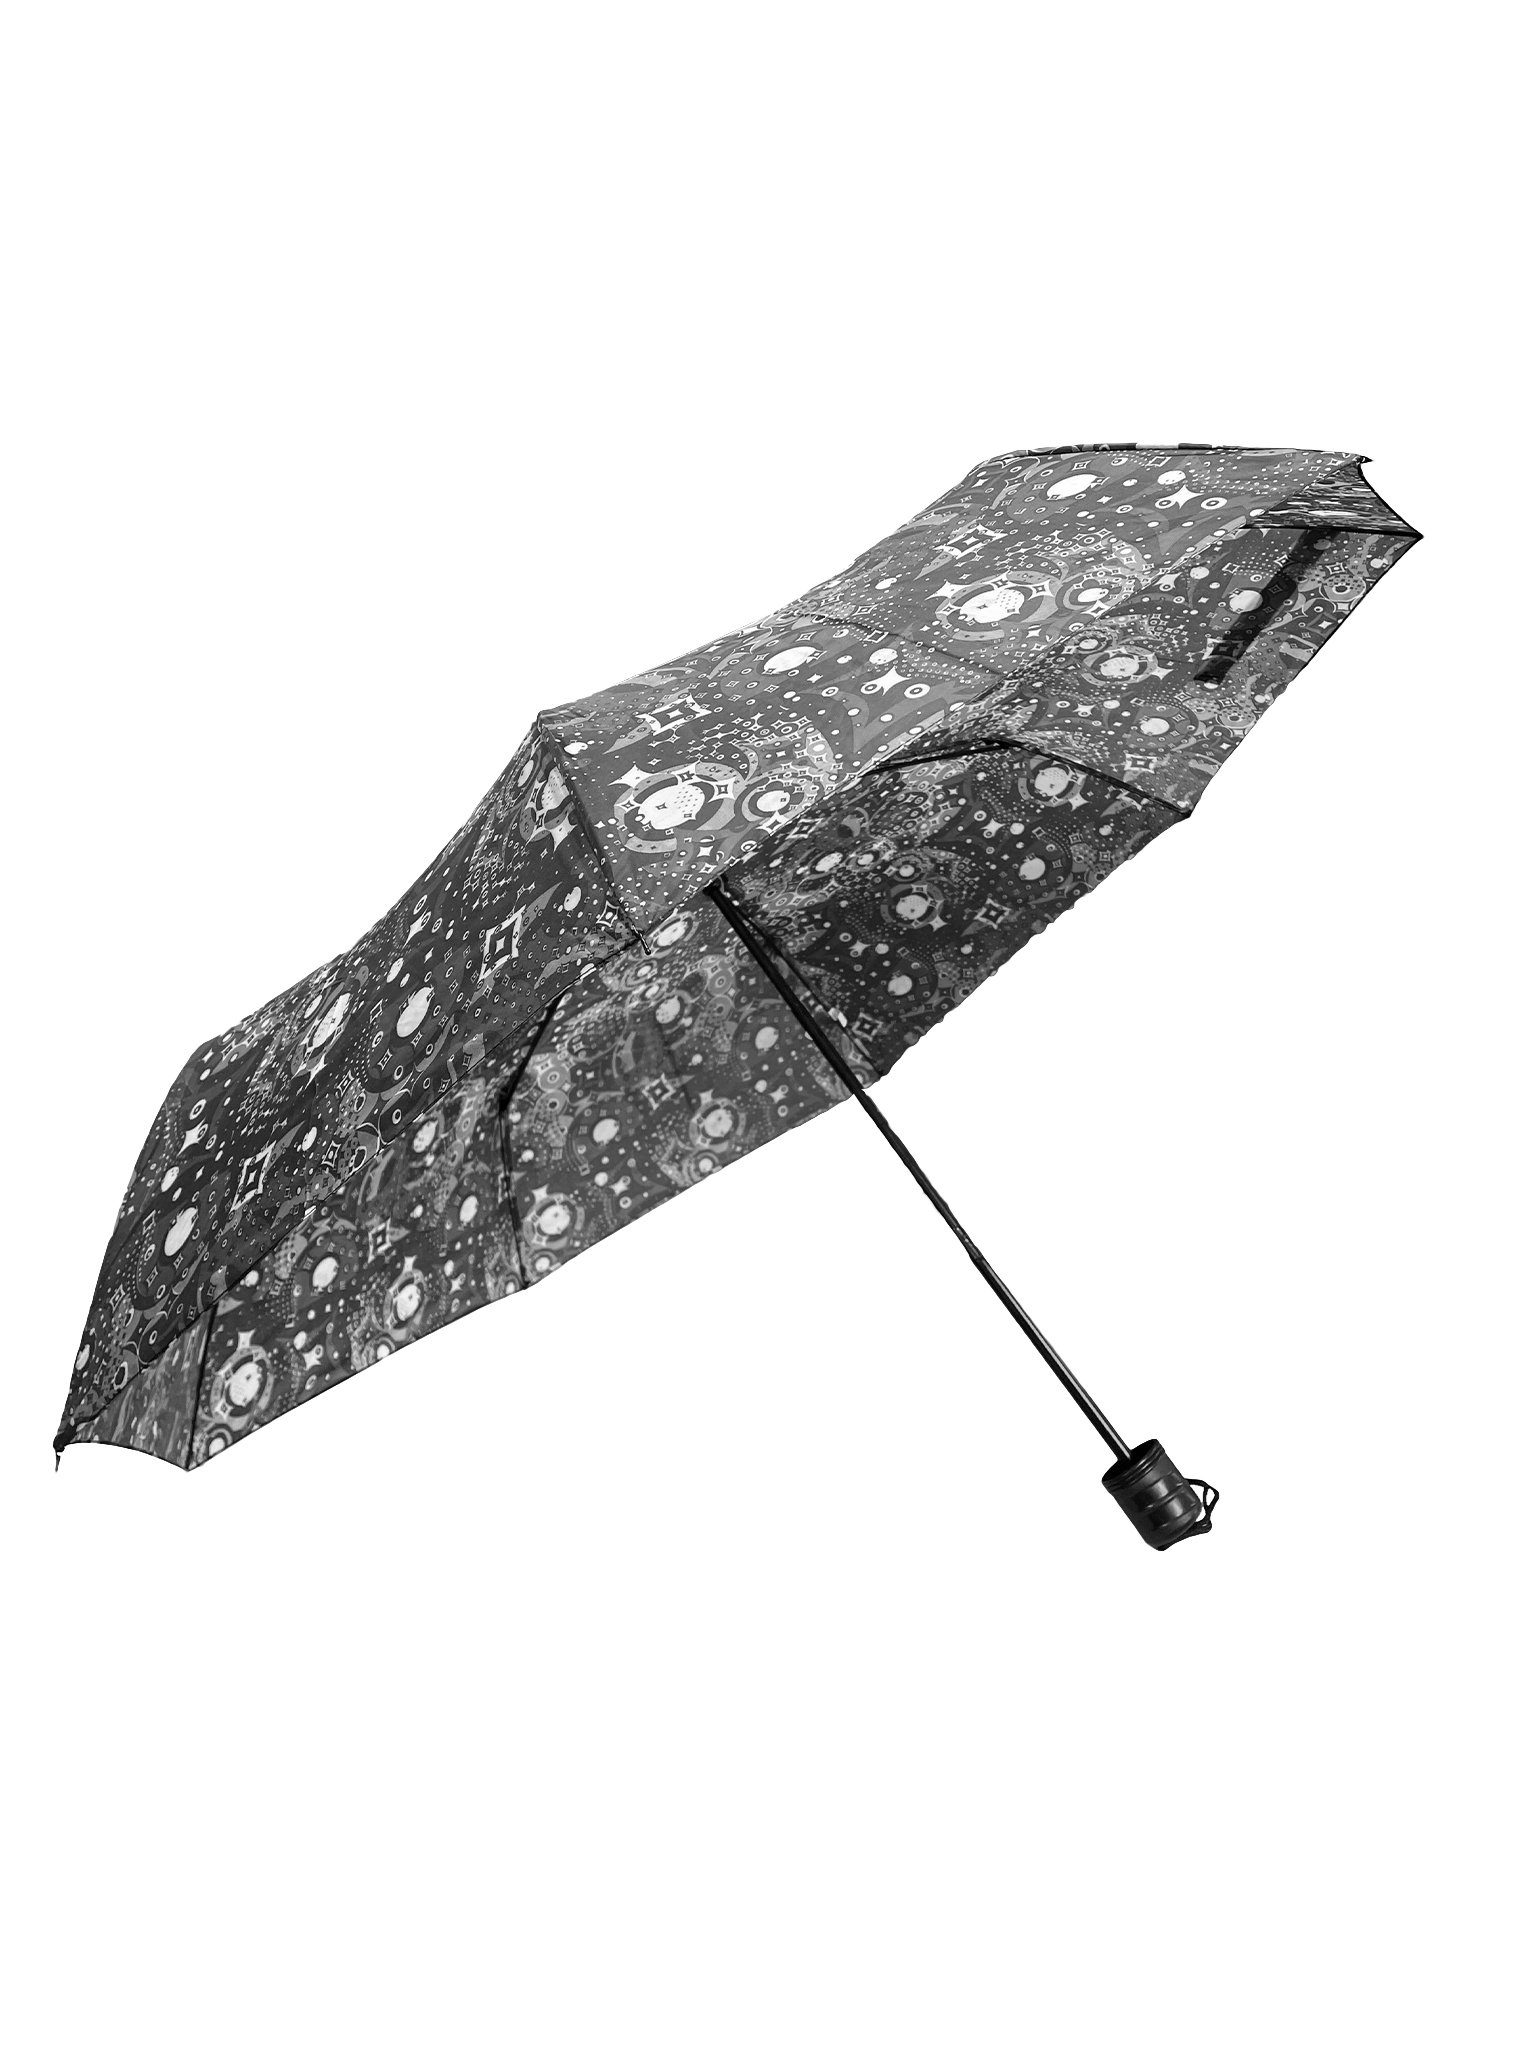 ANELY Taschenregenschirm Kleiner Regenschirm Paris Gemustert Taschenschirm, 6746 in Grau